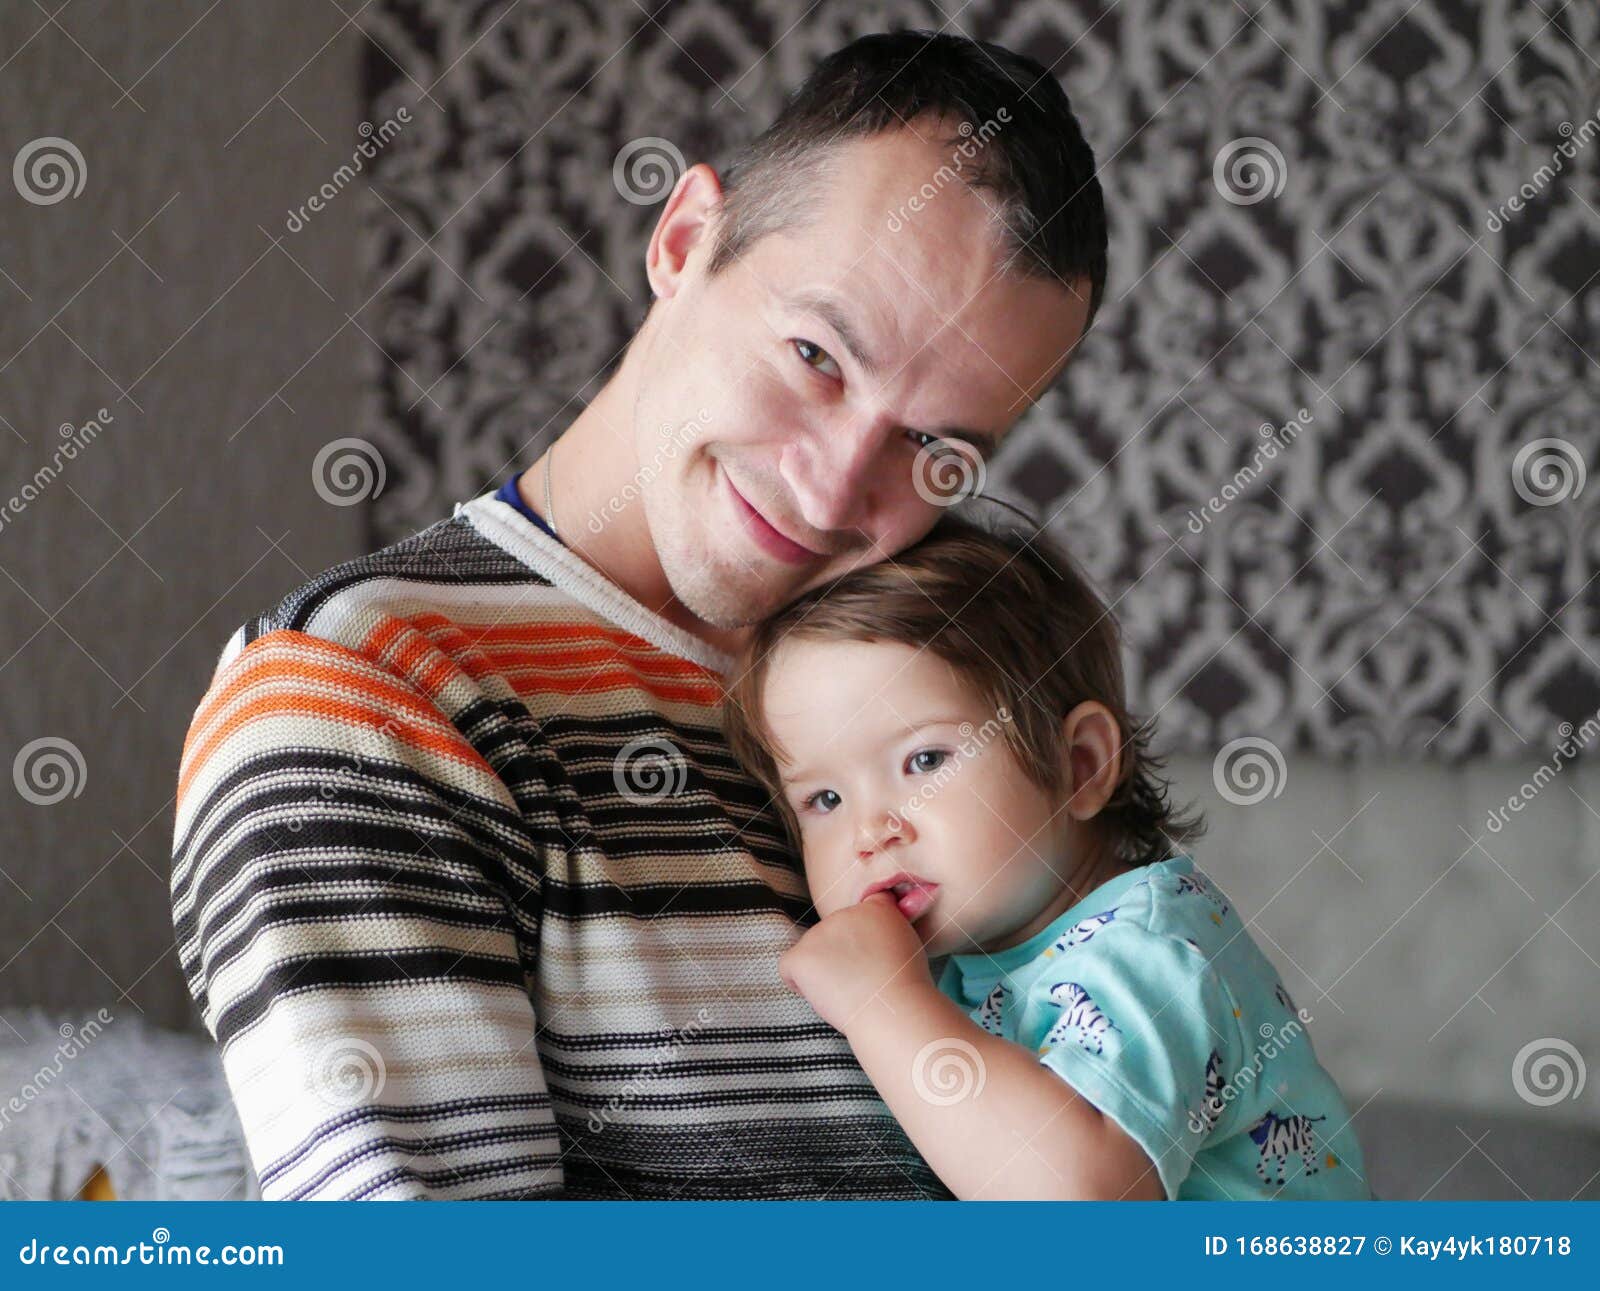 Ο αγαπημένος πατέρας αγκαλιάζει το παιδί στην αγκαλιά του Μωρό 0-1 ετών Πατρική αγάπη Η σχέση πατέρα και γιου Ένας αγαπημένος πατέρας κρατά ένα παιδί στην αγκαλιά του Συναισθηματική φωτογραφία Η έννοια της αγάπης των πατέρων πατέρας αγκαλιάζει μικρό γιο